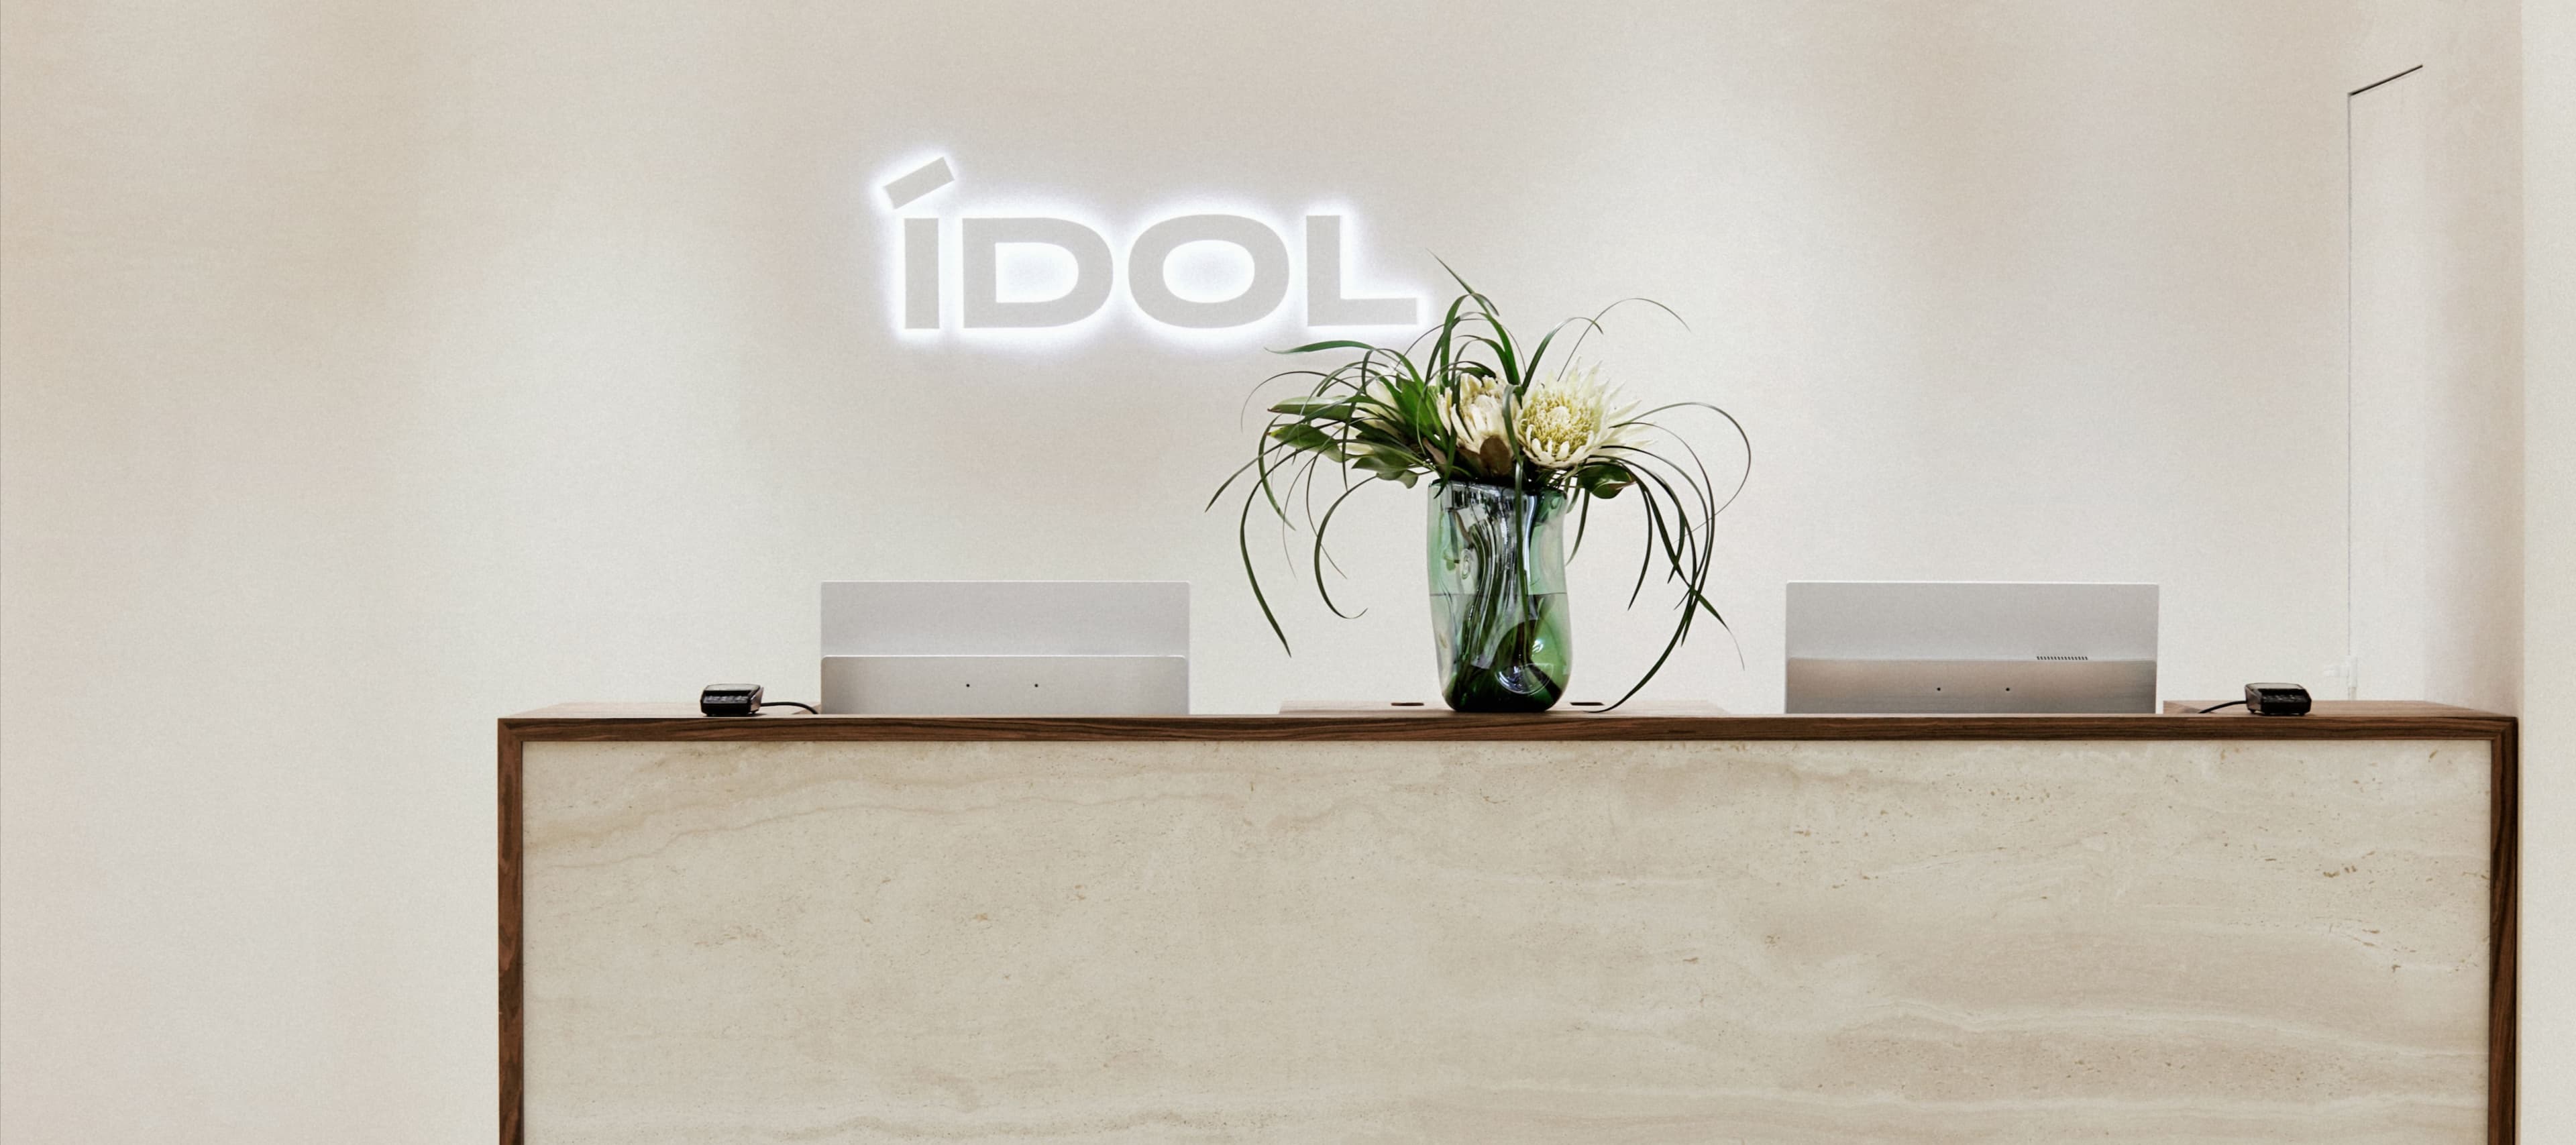 Фото новости: "Idol открыл первый флагманский магазин в новой концепции"